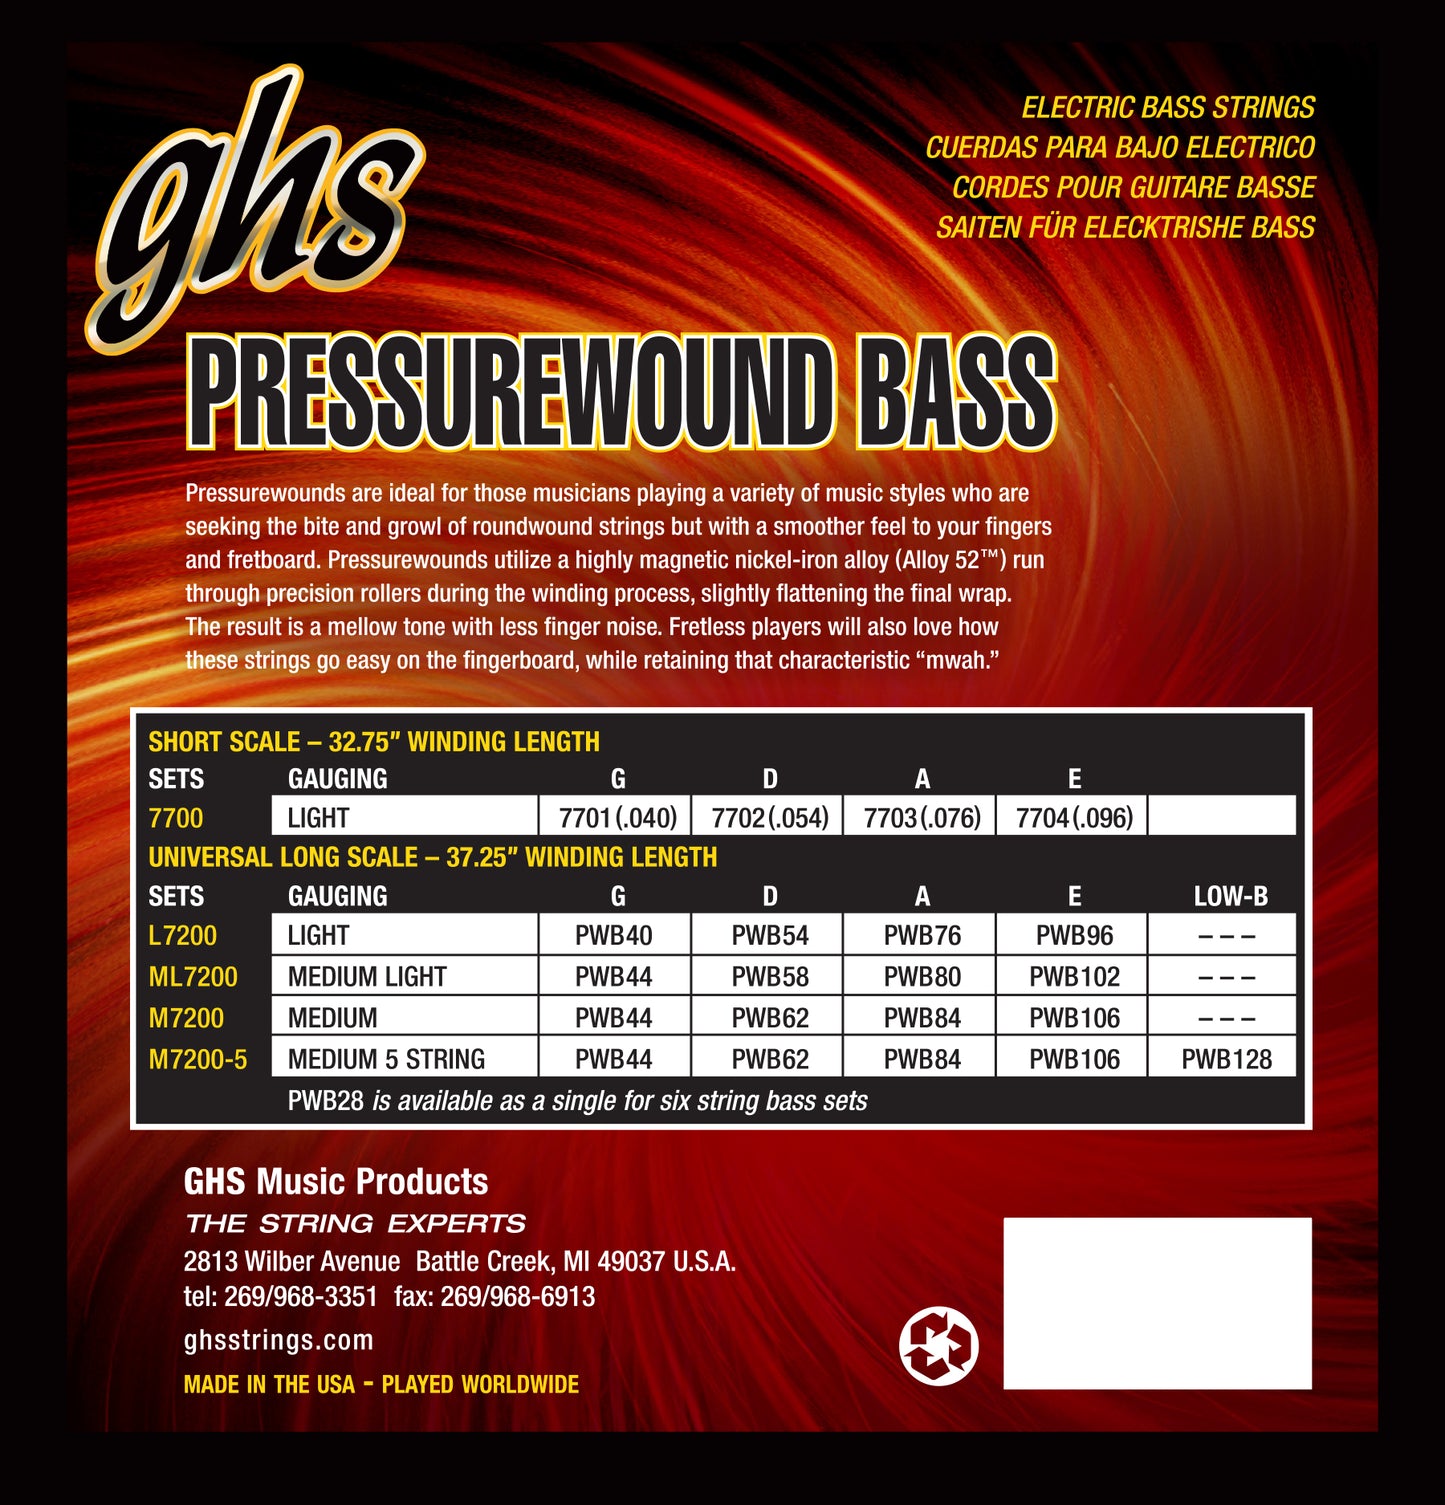 GHS Pressurewound L7200, 4-String 40-96